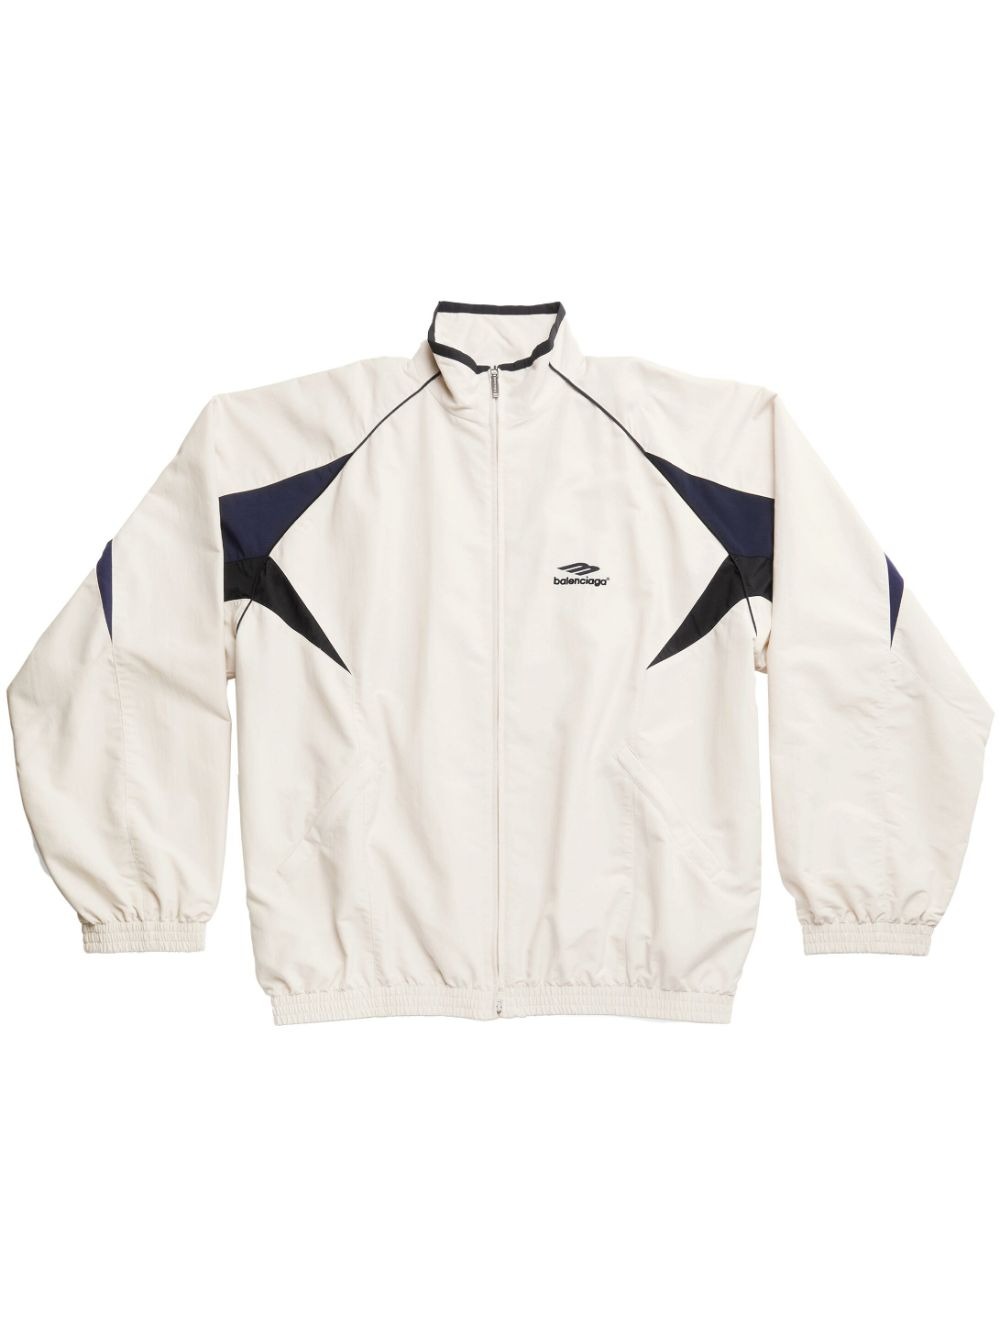 Buy Coats and jackets Balenciaga 3B Sports Icon track jacket